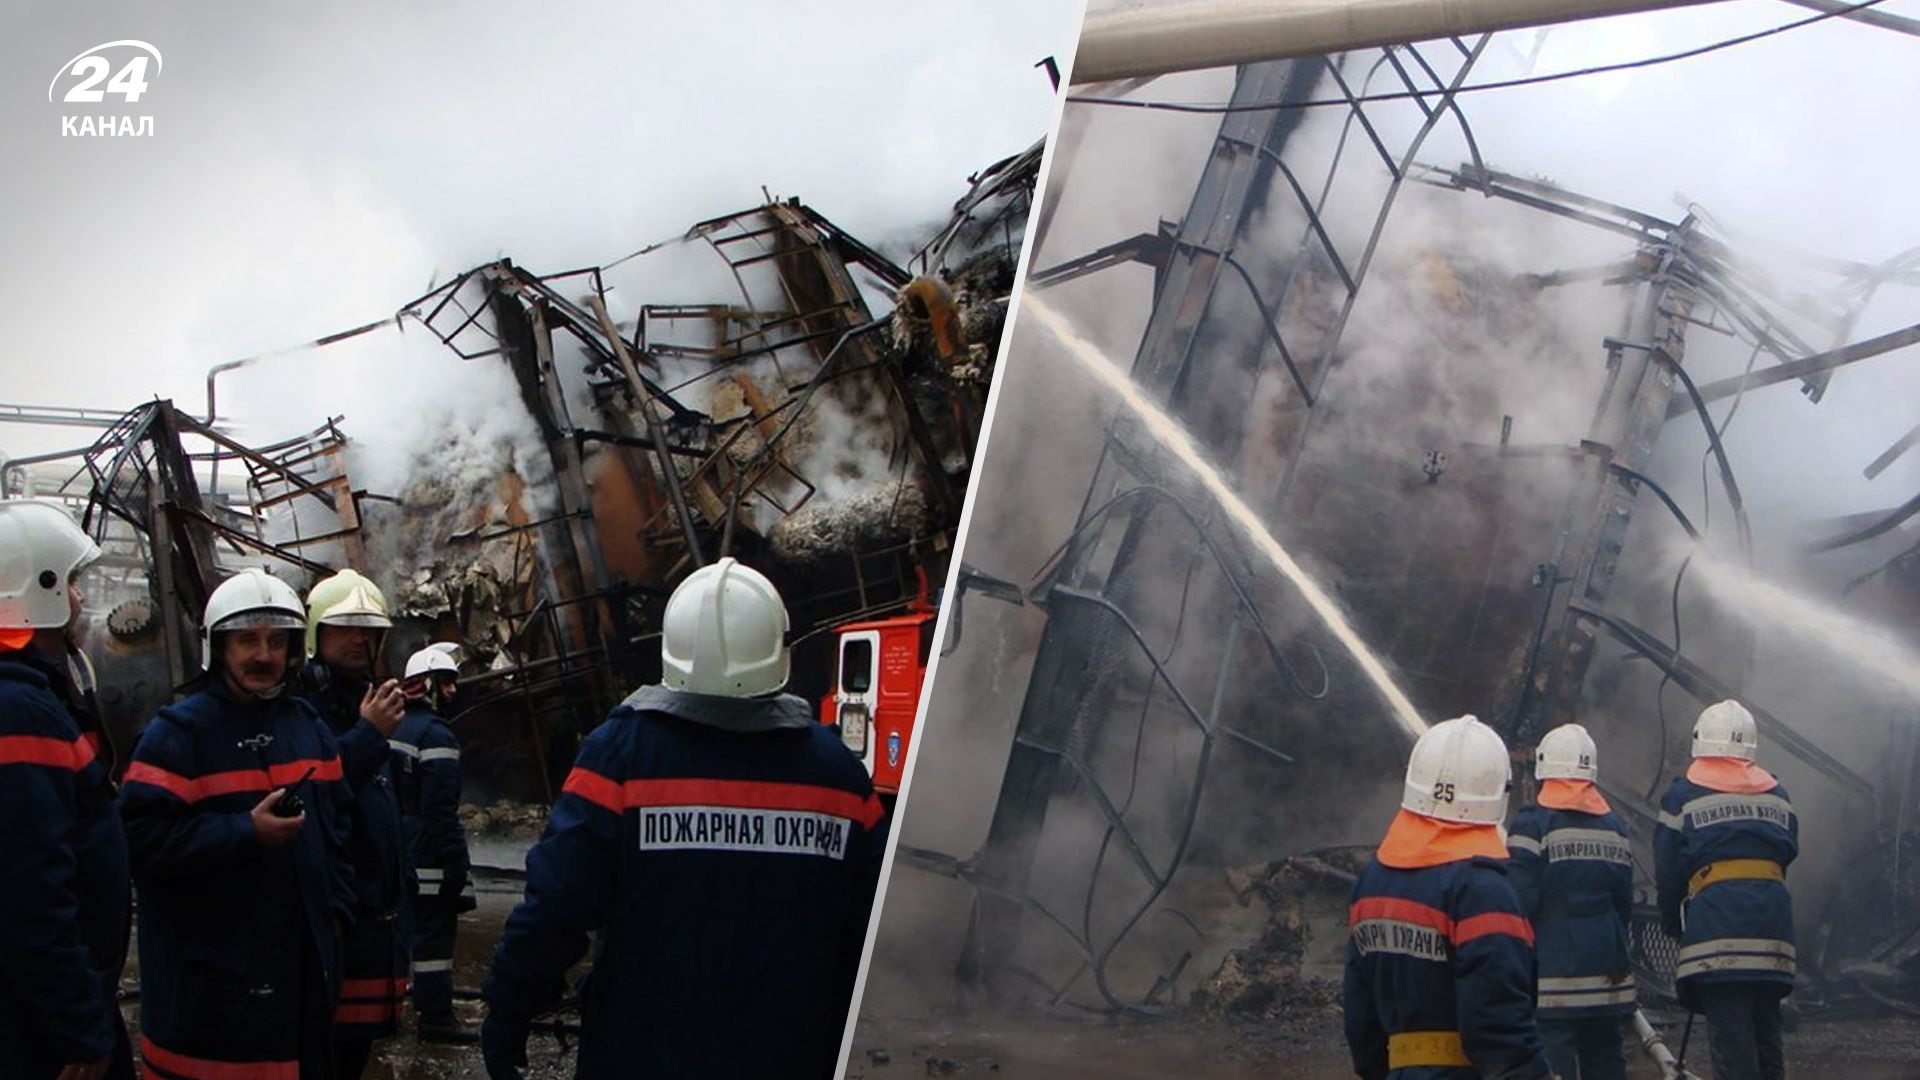 Пожежа на Лукойлі у Волгограді - найбільшому виробнику нафтопродуктів в окрузі 